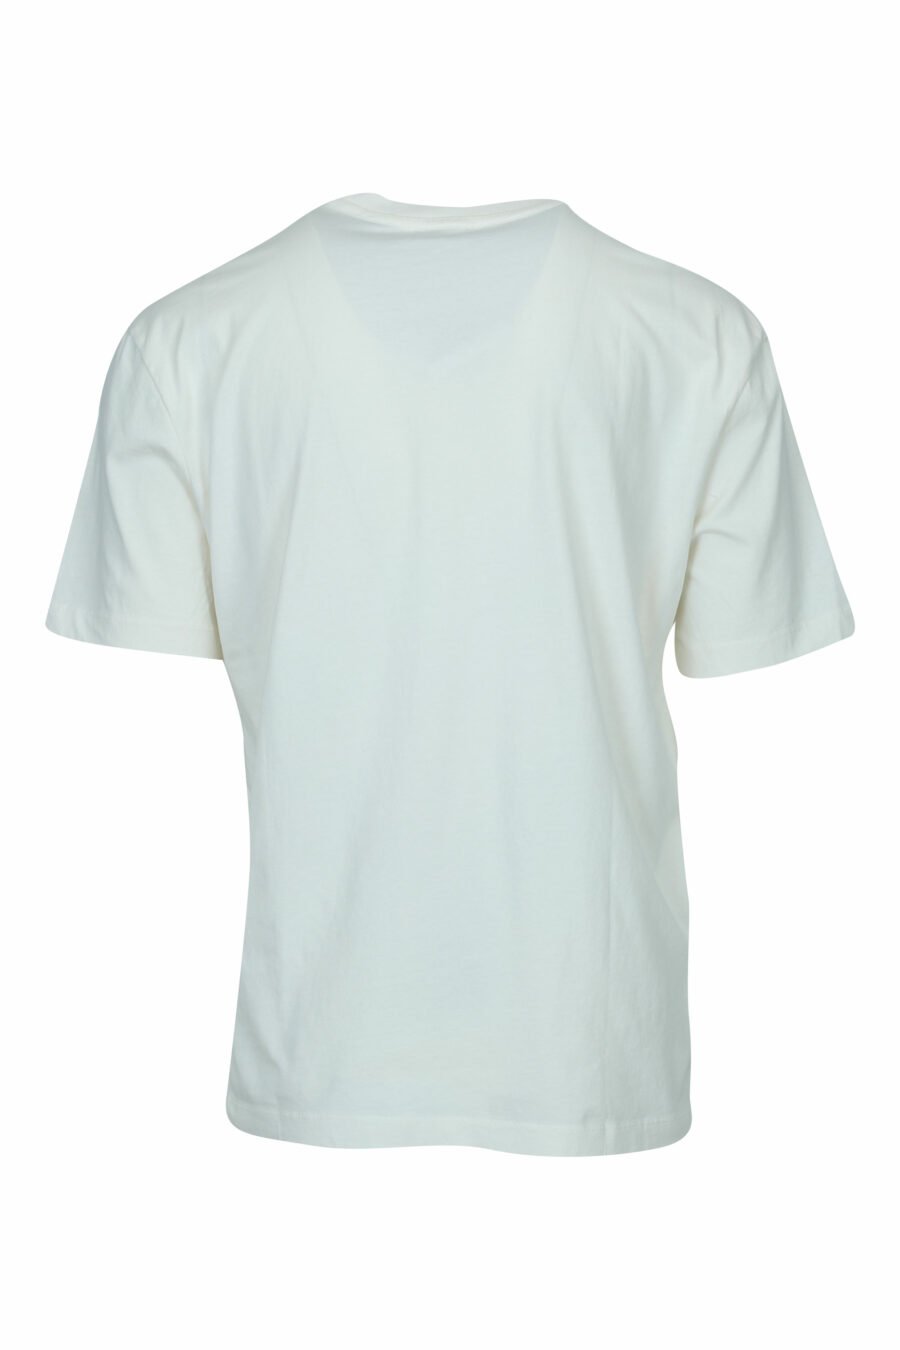 Camiseta blanca con maxilogo escudo desgastado - 8058610830359 1